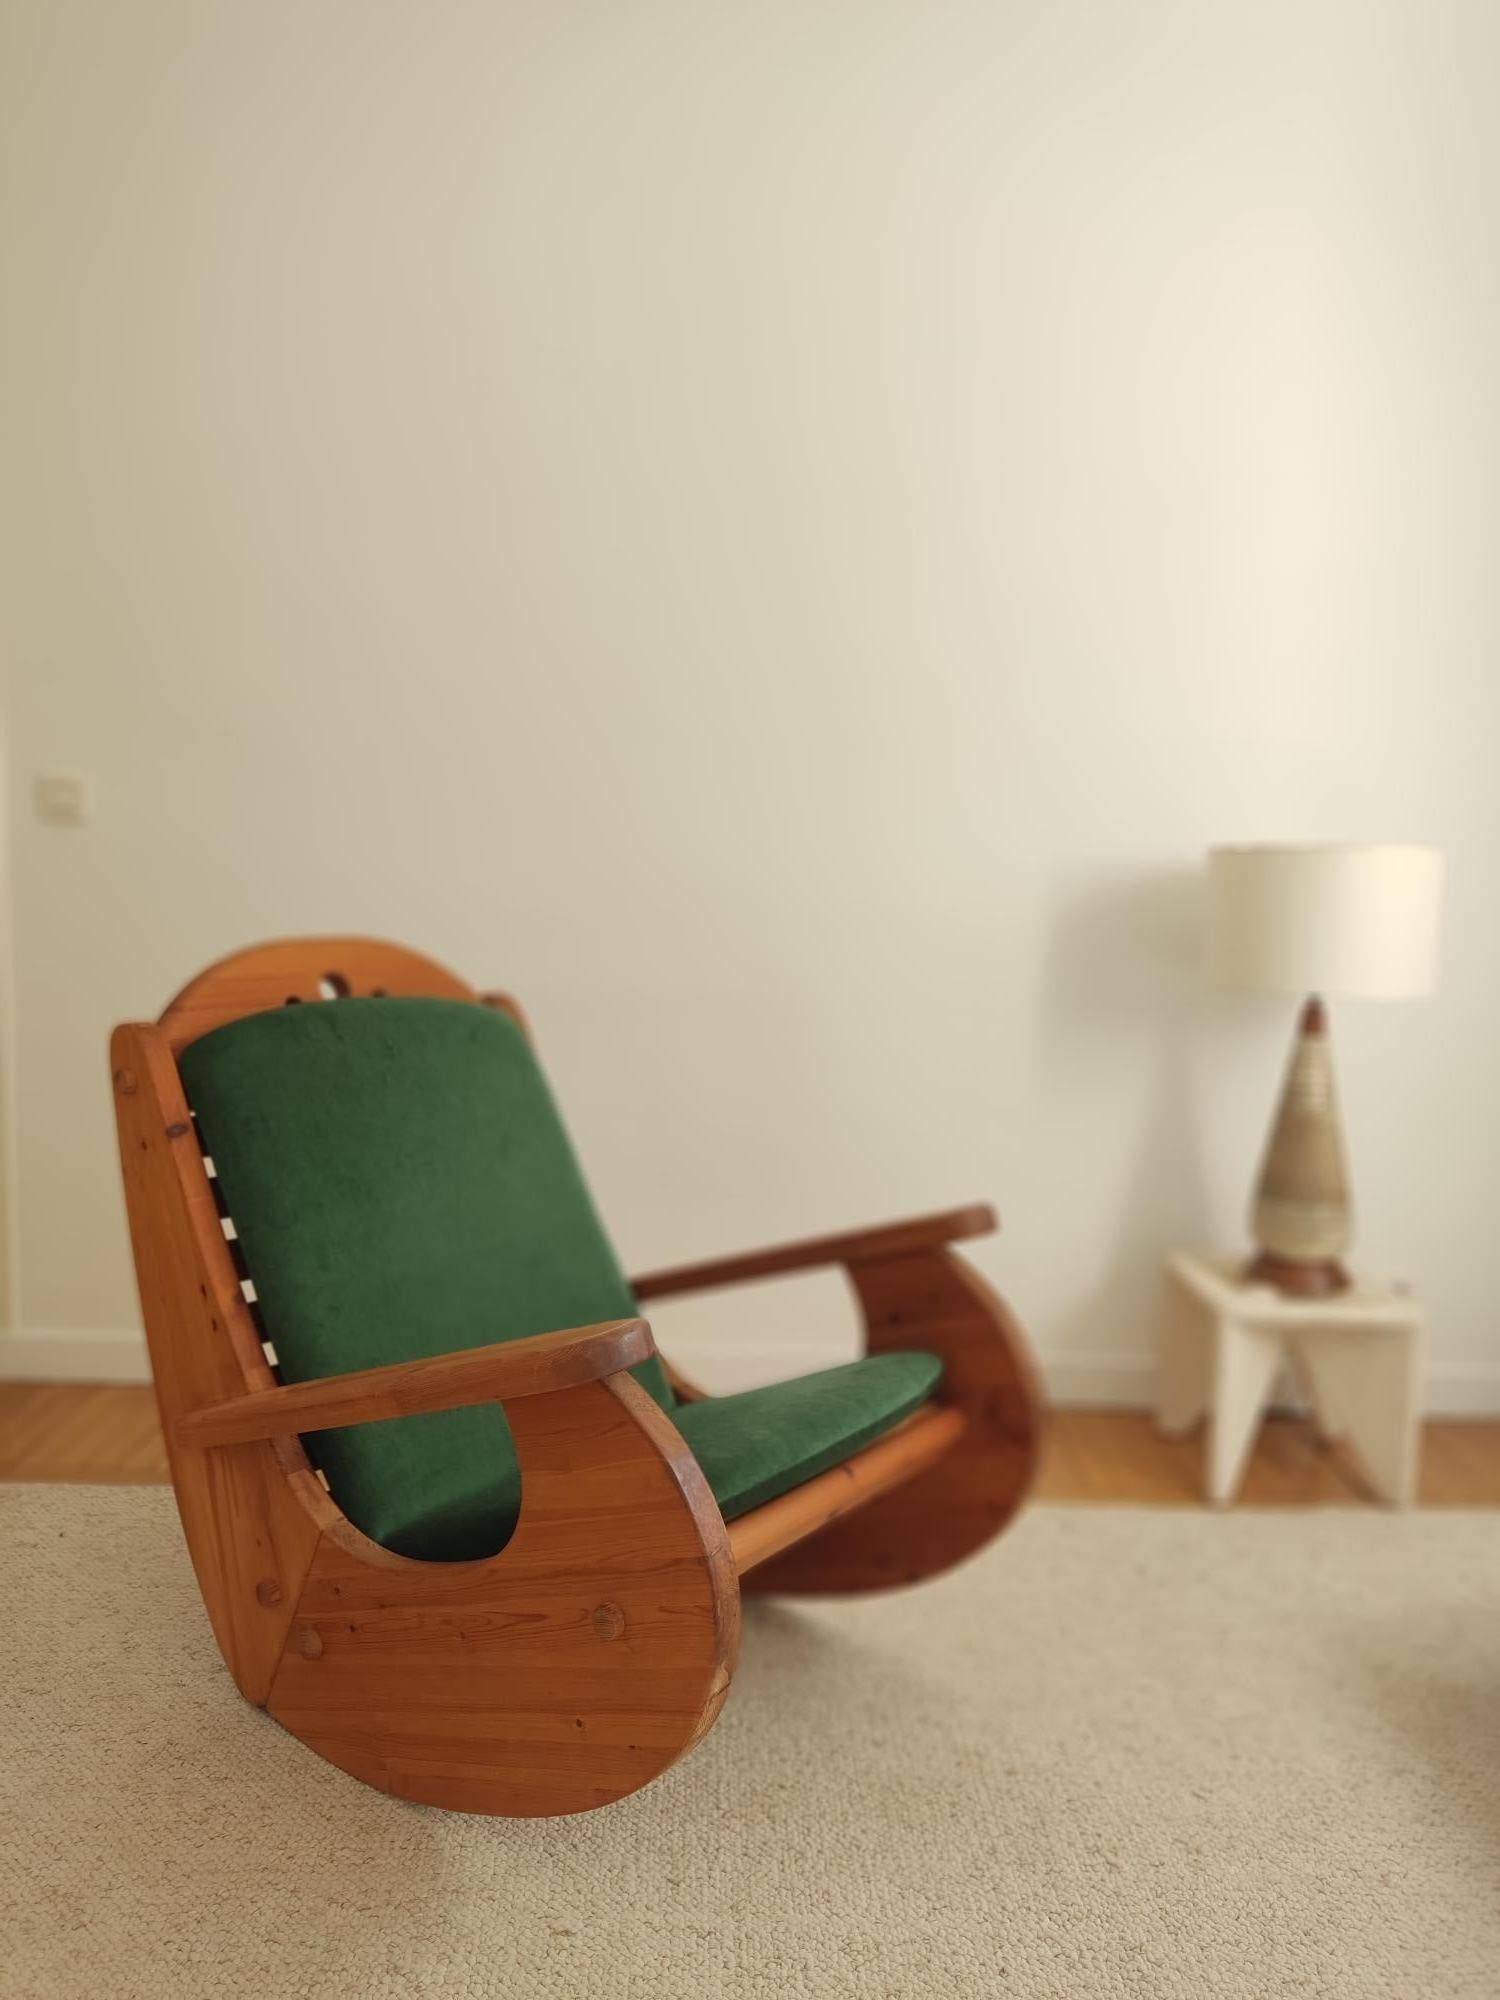 Chaise à bascule scandinave des années 1970 en bois de pin. L'assemblage est chevillé avec du bois. Les couleurs chaudes et les formes arrondies donneront une ambiance cocooning à votre intérieur. Nouveau coussin en velours mohair vert.


